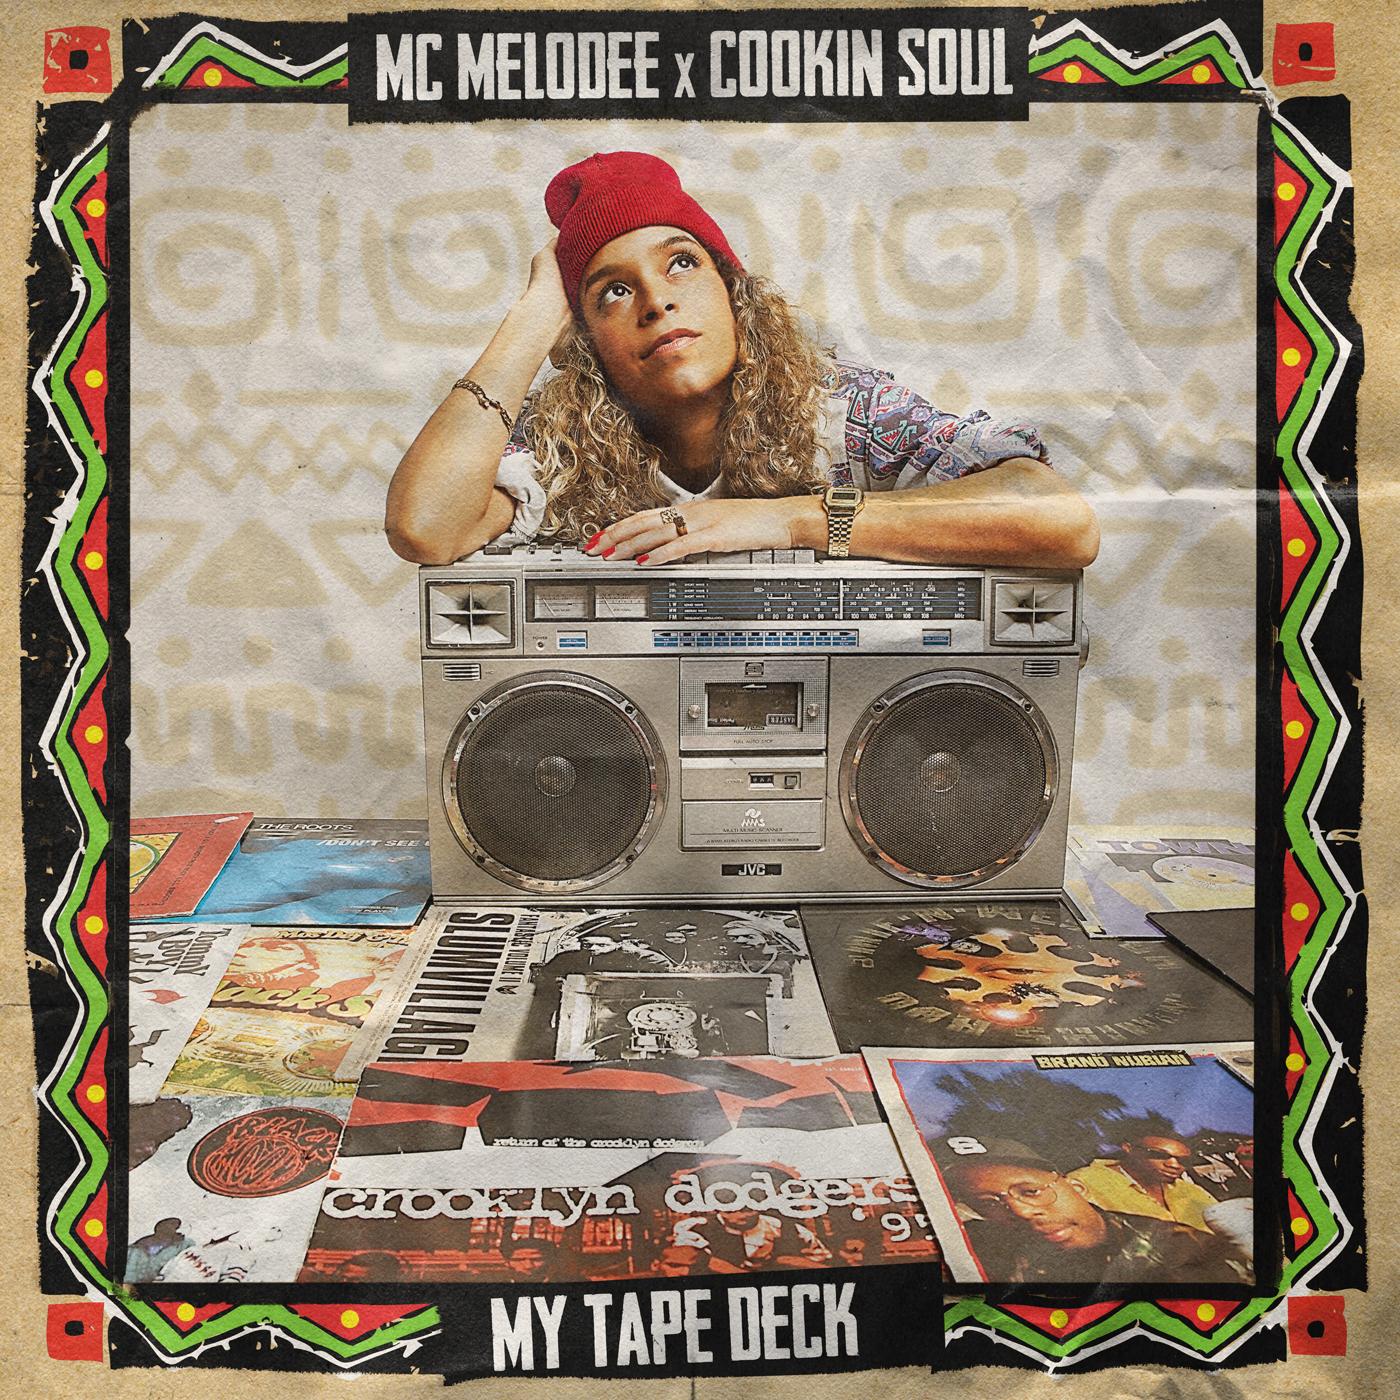 Décourvez le tres bon album My Tape Deck de MC Melodee & Cookin Soul